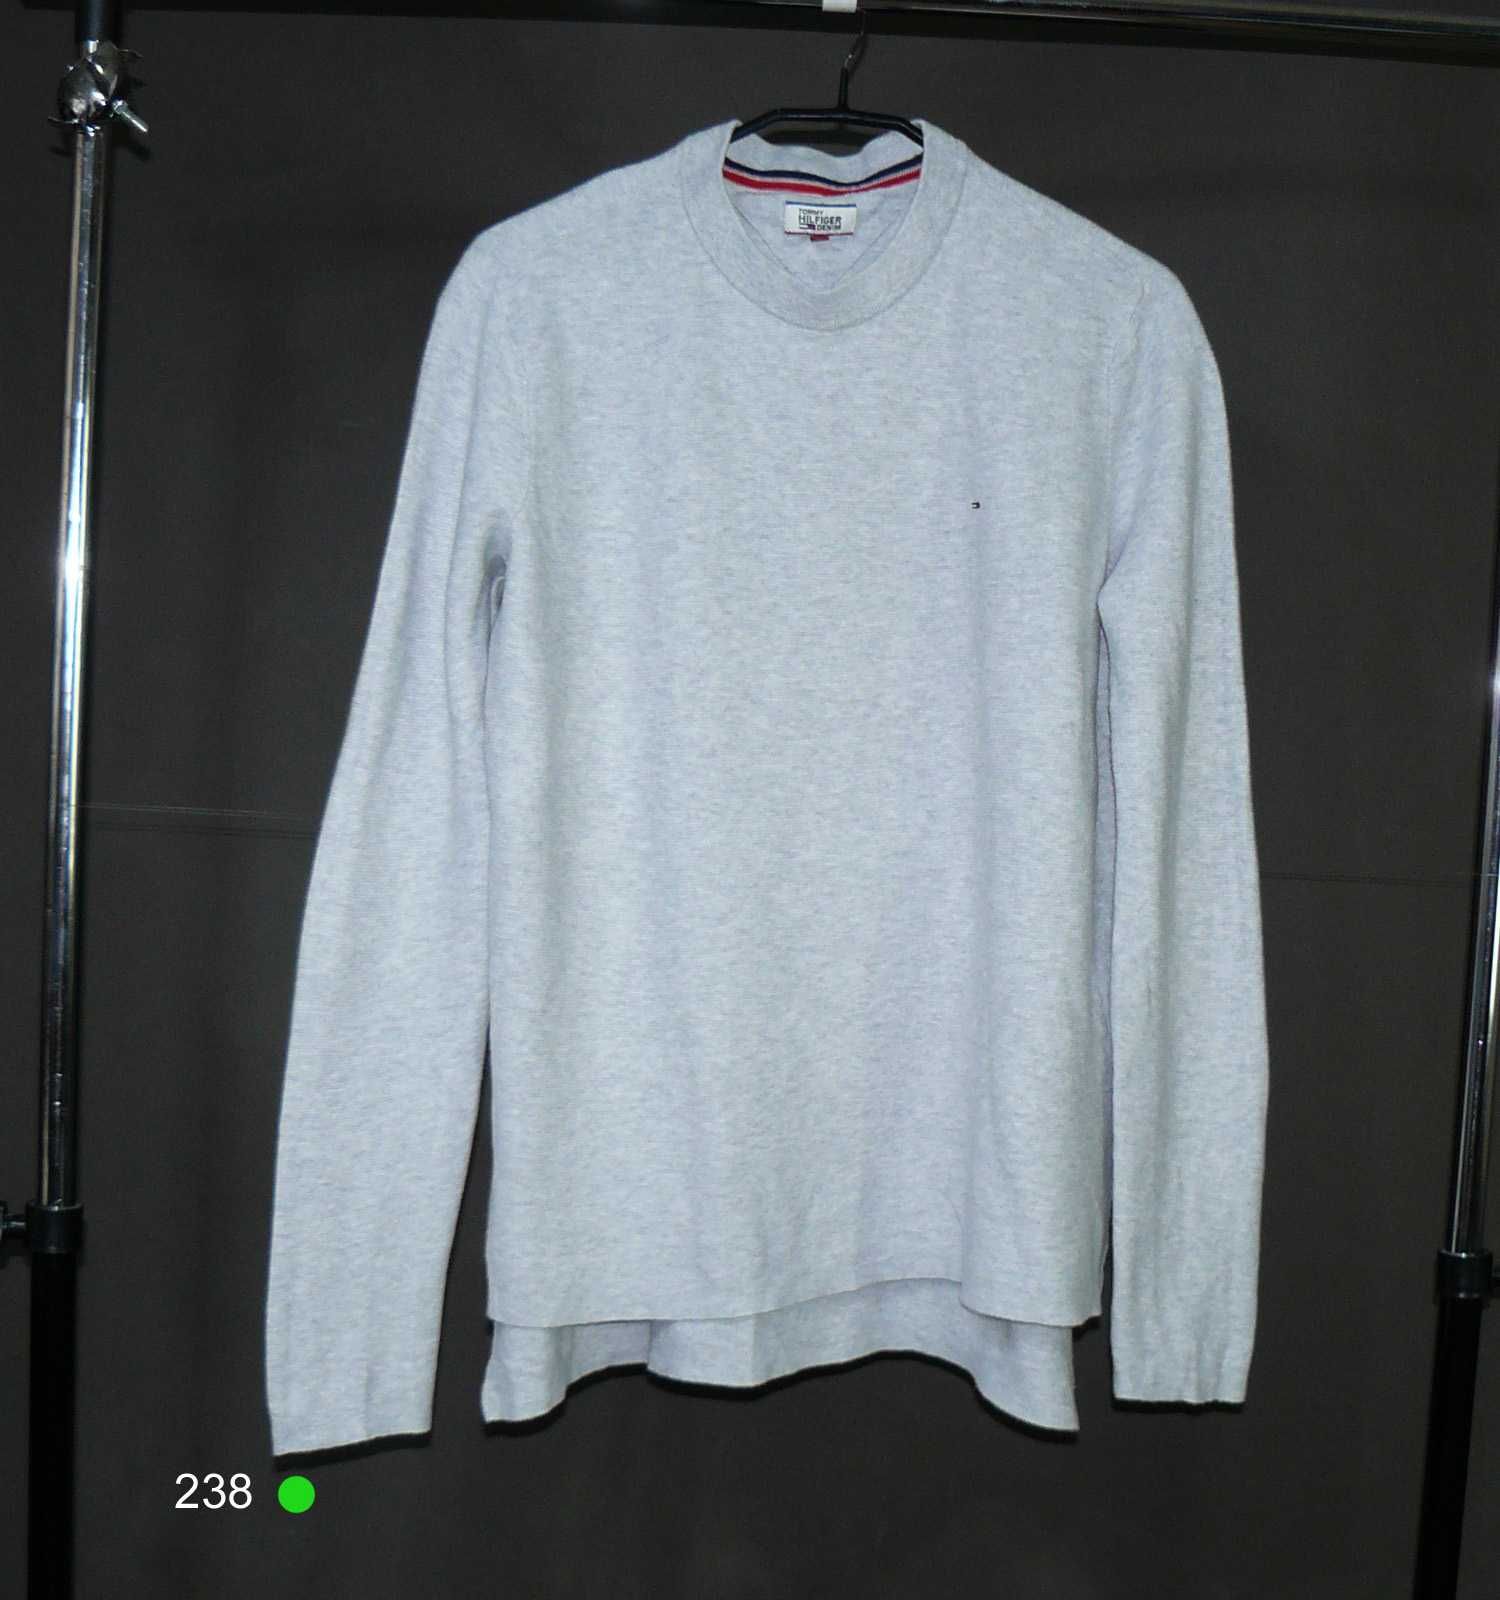 Tommy Hilfiger Atrakcyjny sweterek 93% bawełny roz M/L